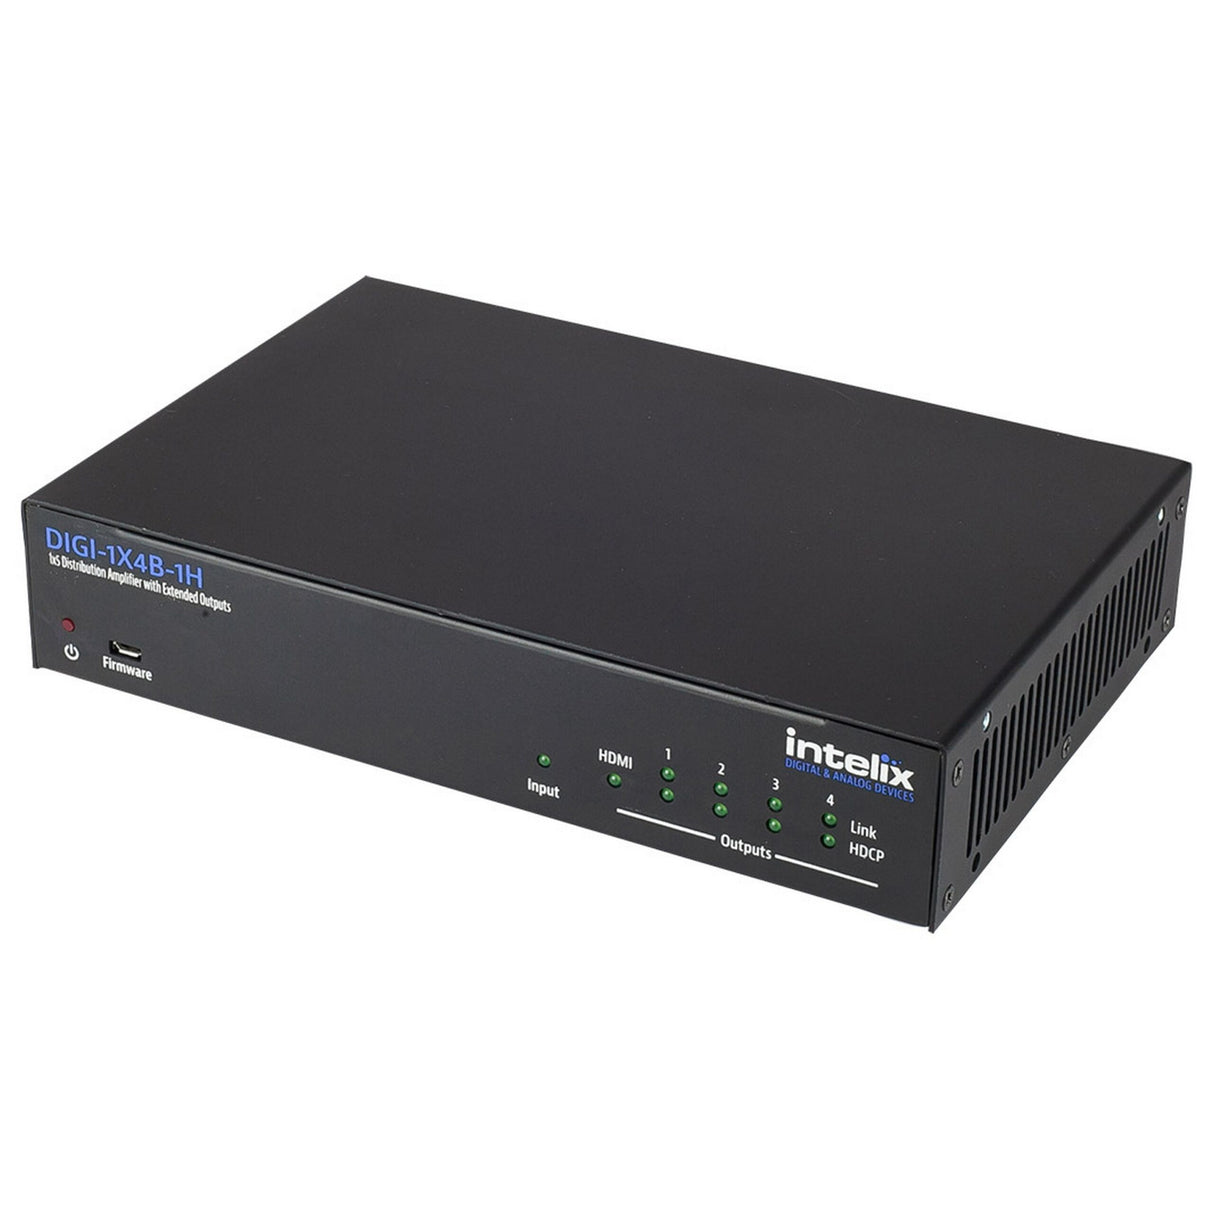 Intelix DIGI-1X4B-1H 1 x 5 Distribution Amplifier with HDBT